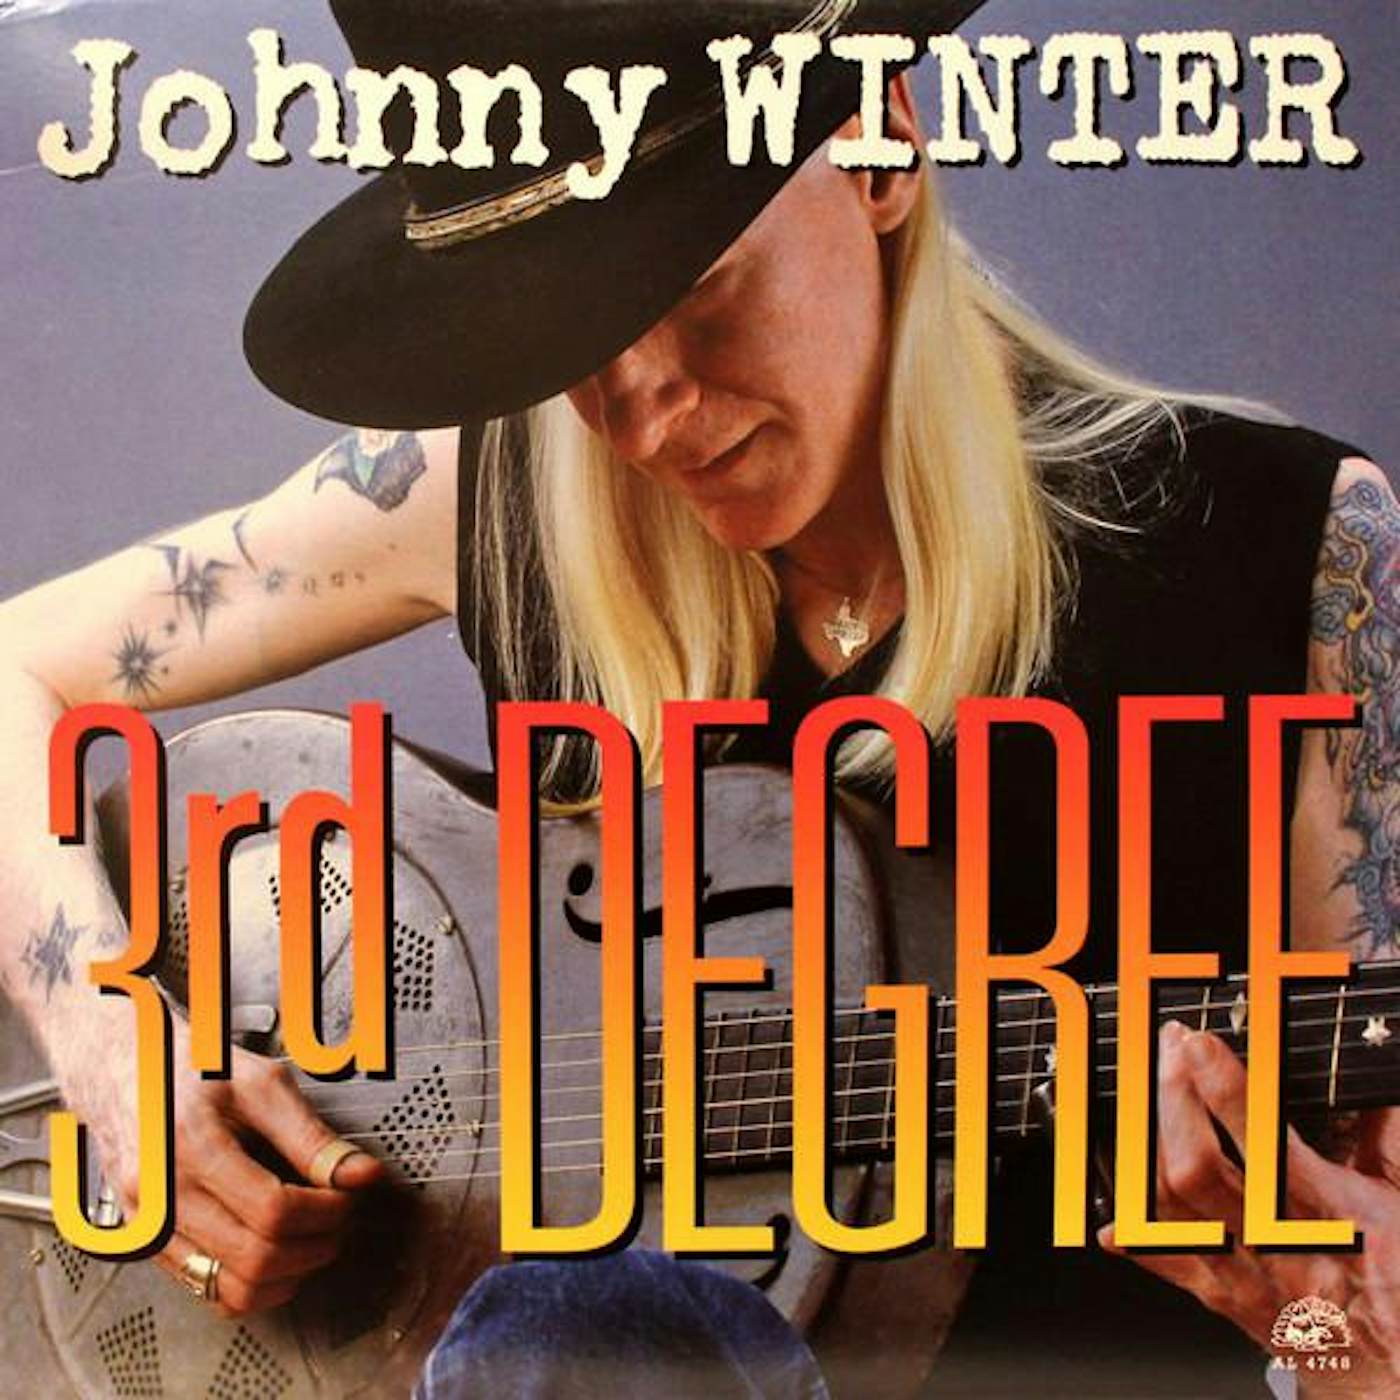 Johnny Winter 3RD DEGREE (140G) Vinyl Record